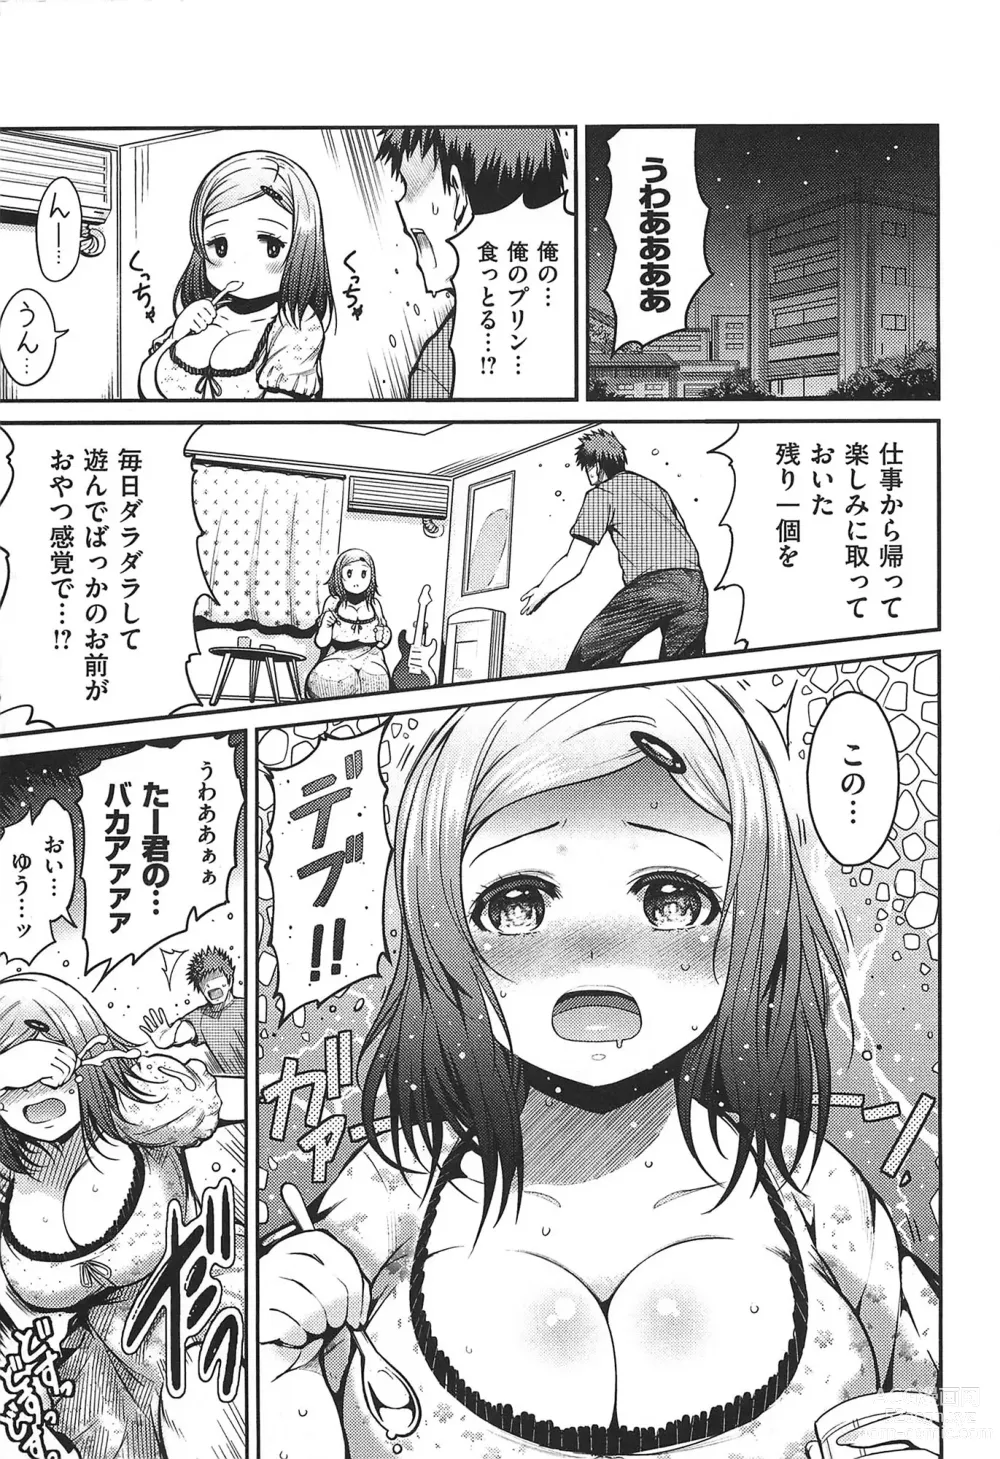 Page 192 of manga Chichimatsuri